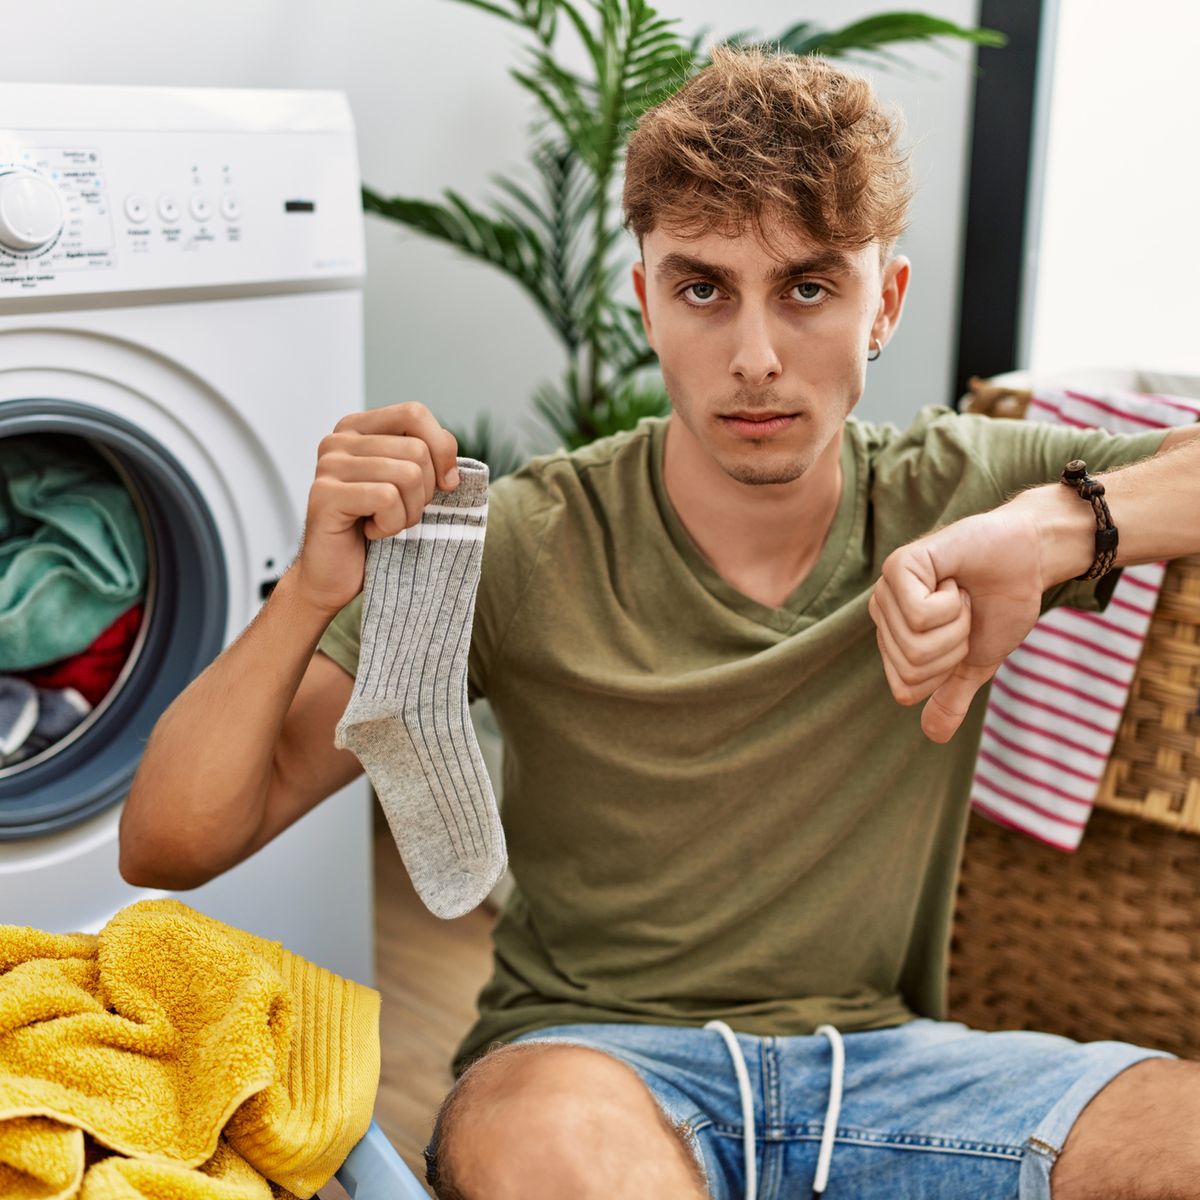 Esas son las 10 prendas que no debes meter NUNCA en tu secadora